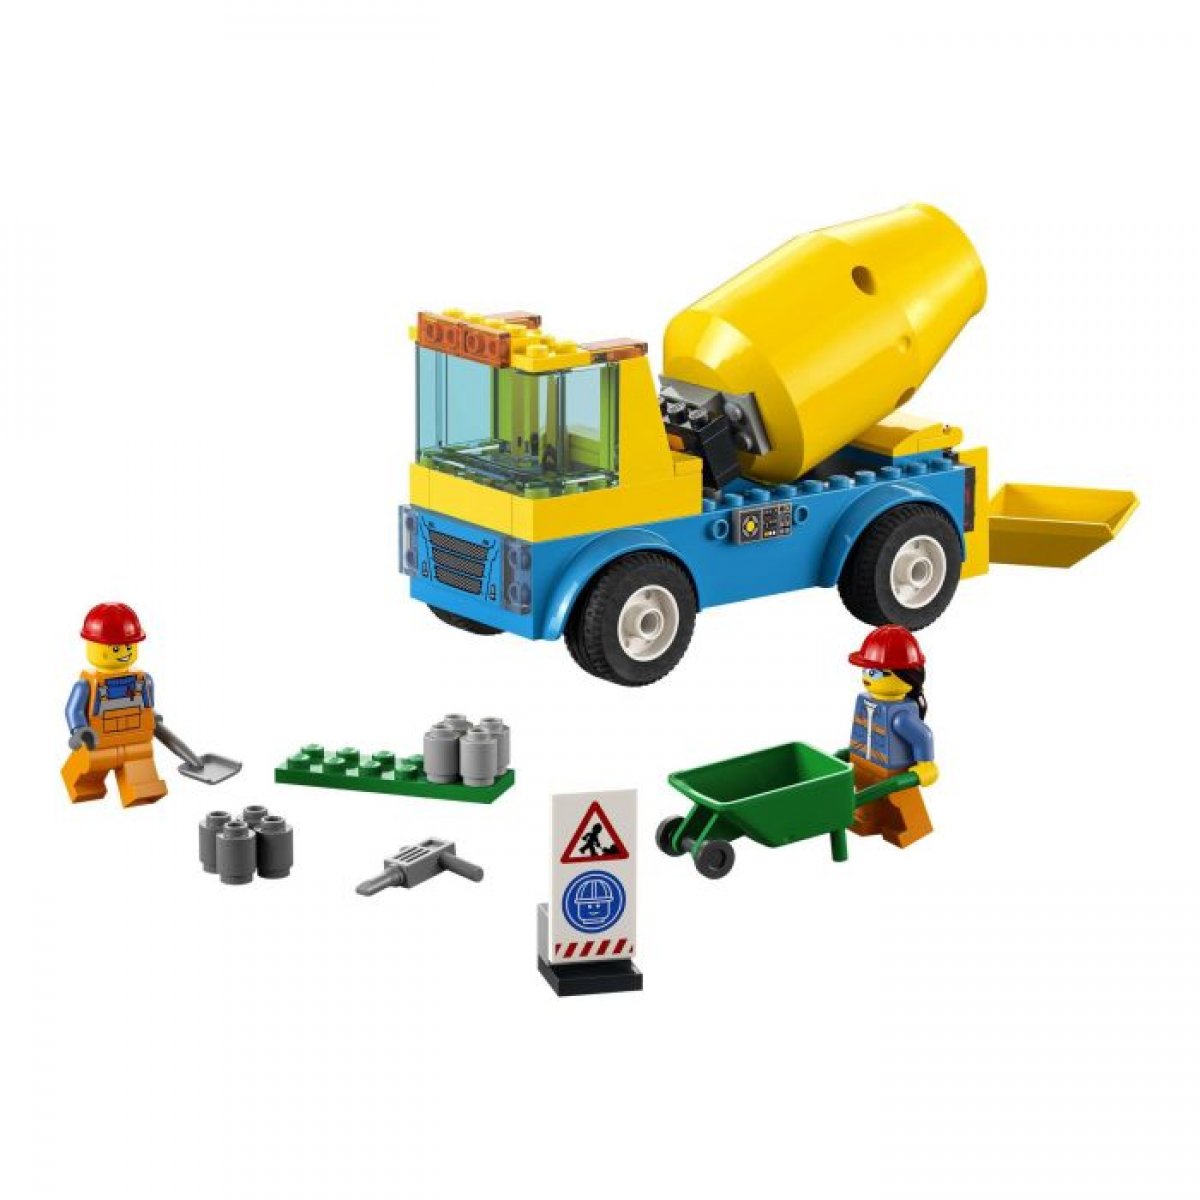 LEGO 60325 - City Betonmischer